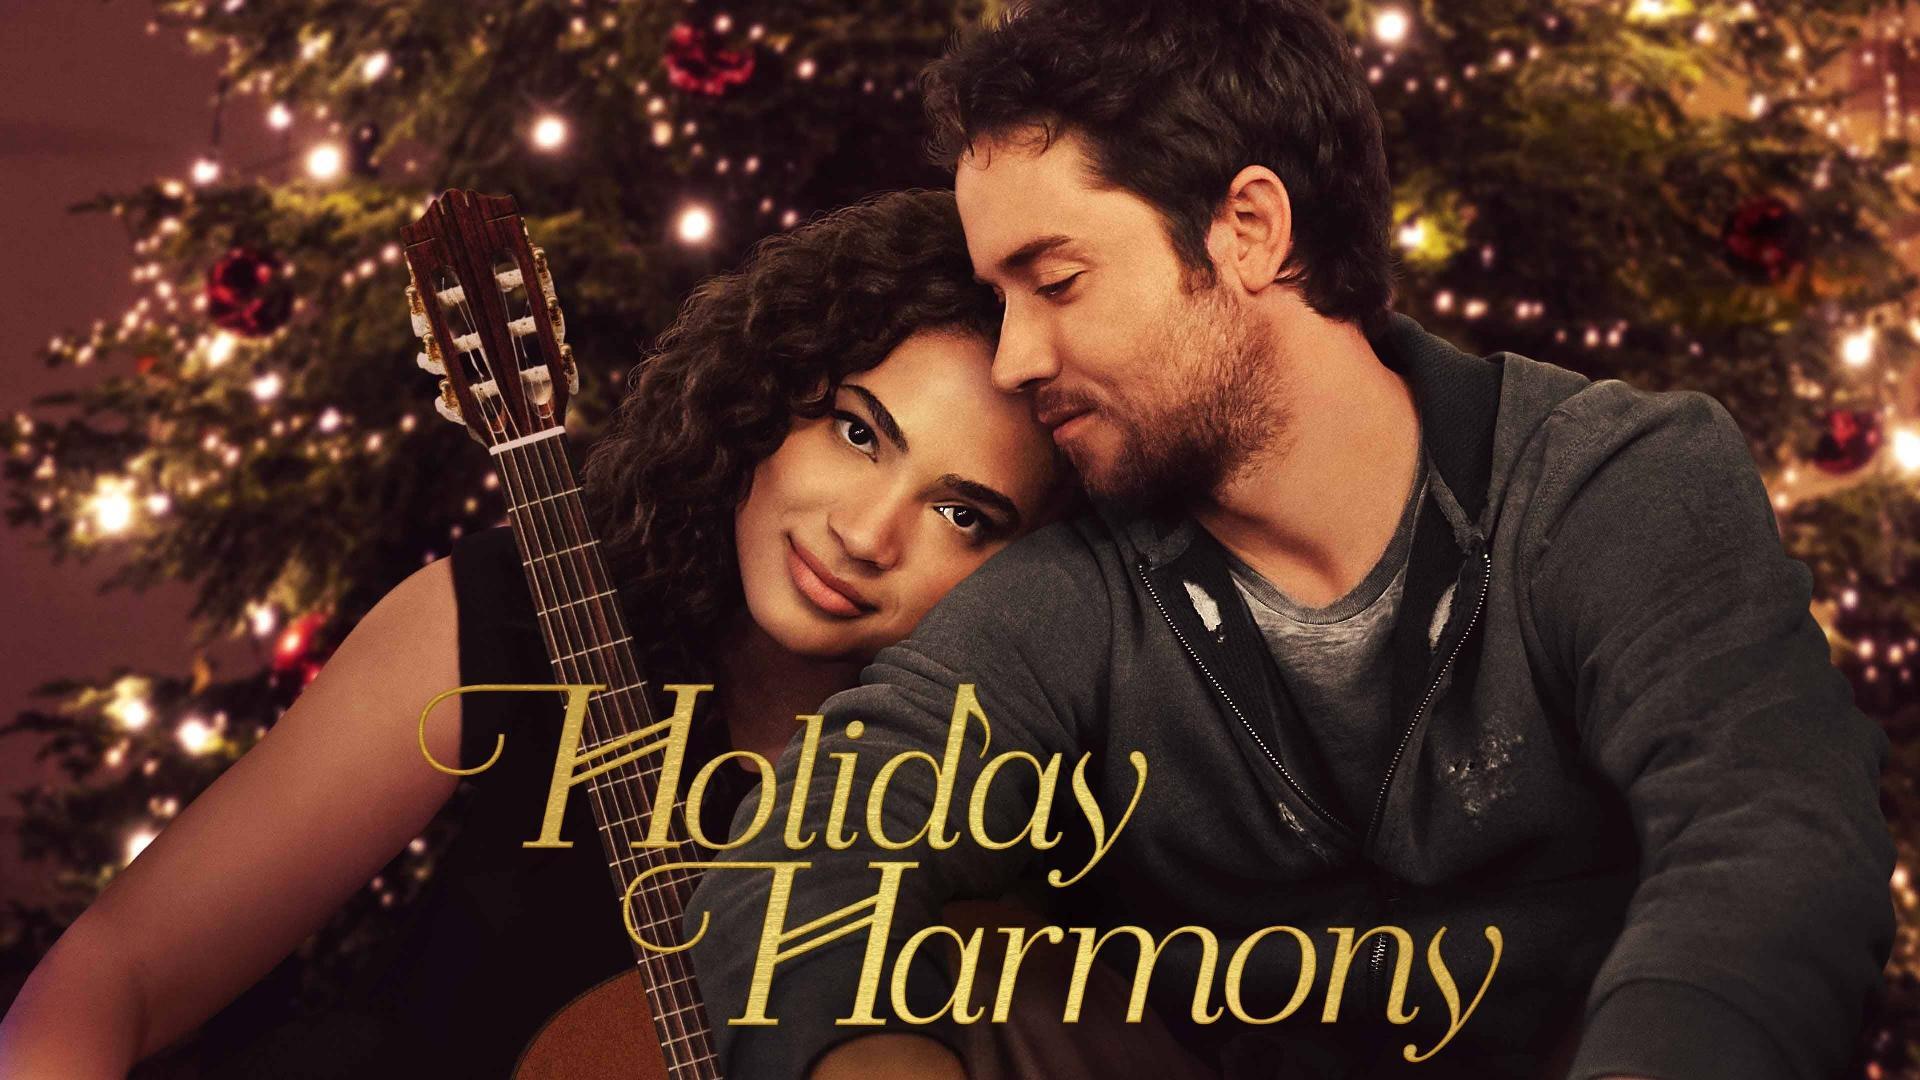 სადღესასწაულო ჰარმონია / Holiday Harmony